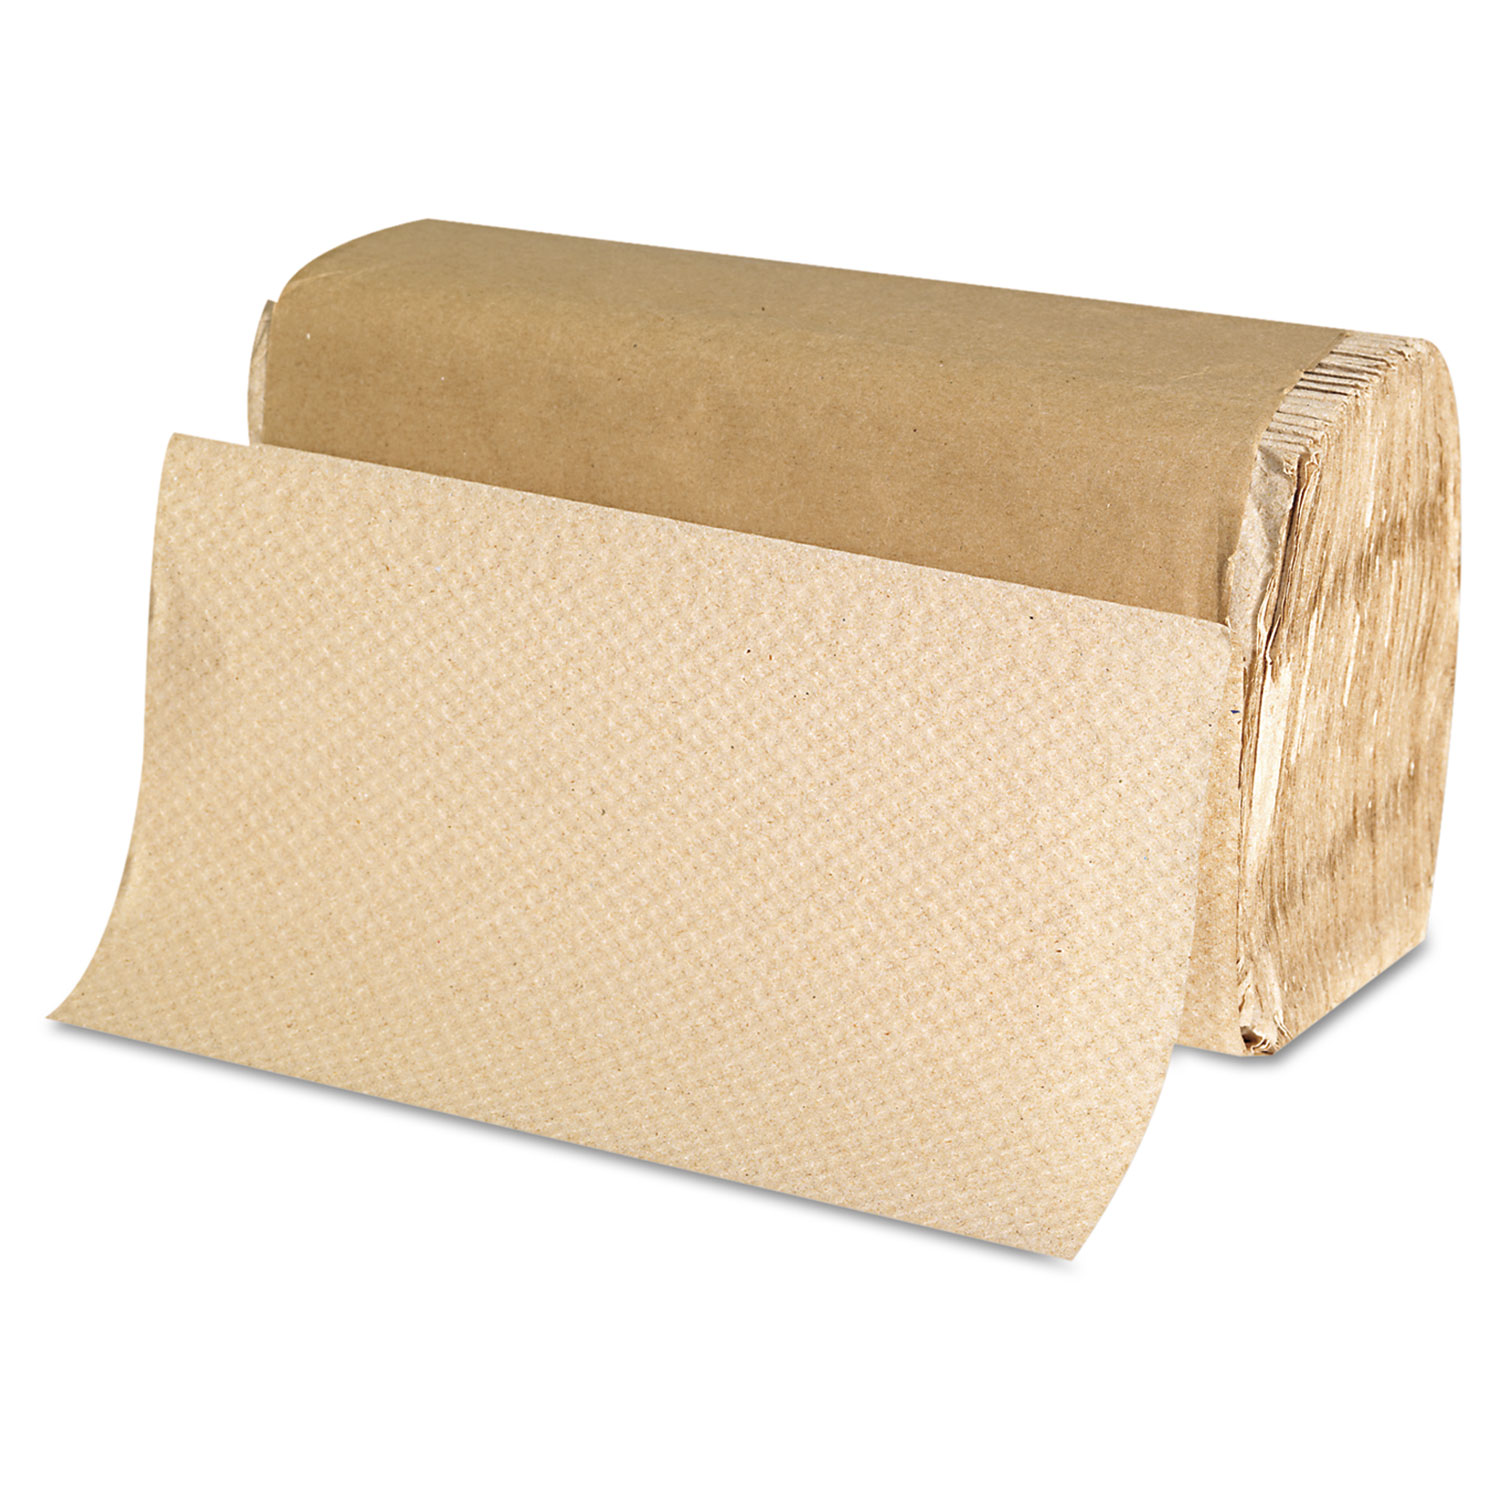  GEN G1507 Singlefold Paper Towels, 9 x 9 9/20, Natural, 250/Pack, 16 Packs/Carton (GEN1507) 